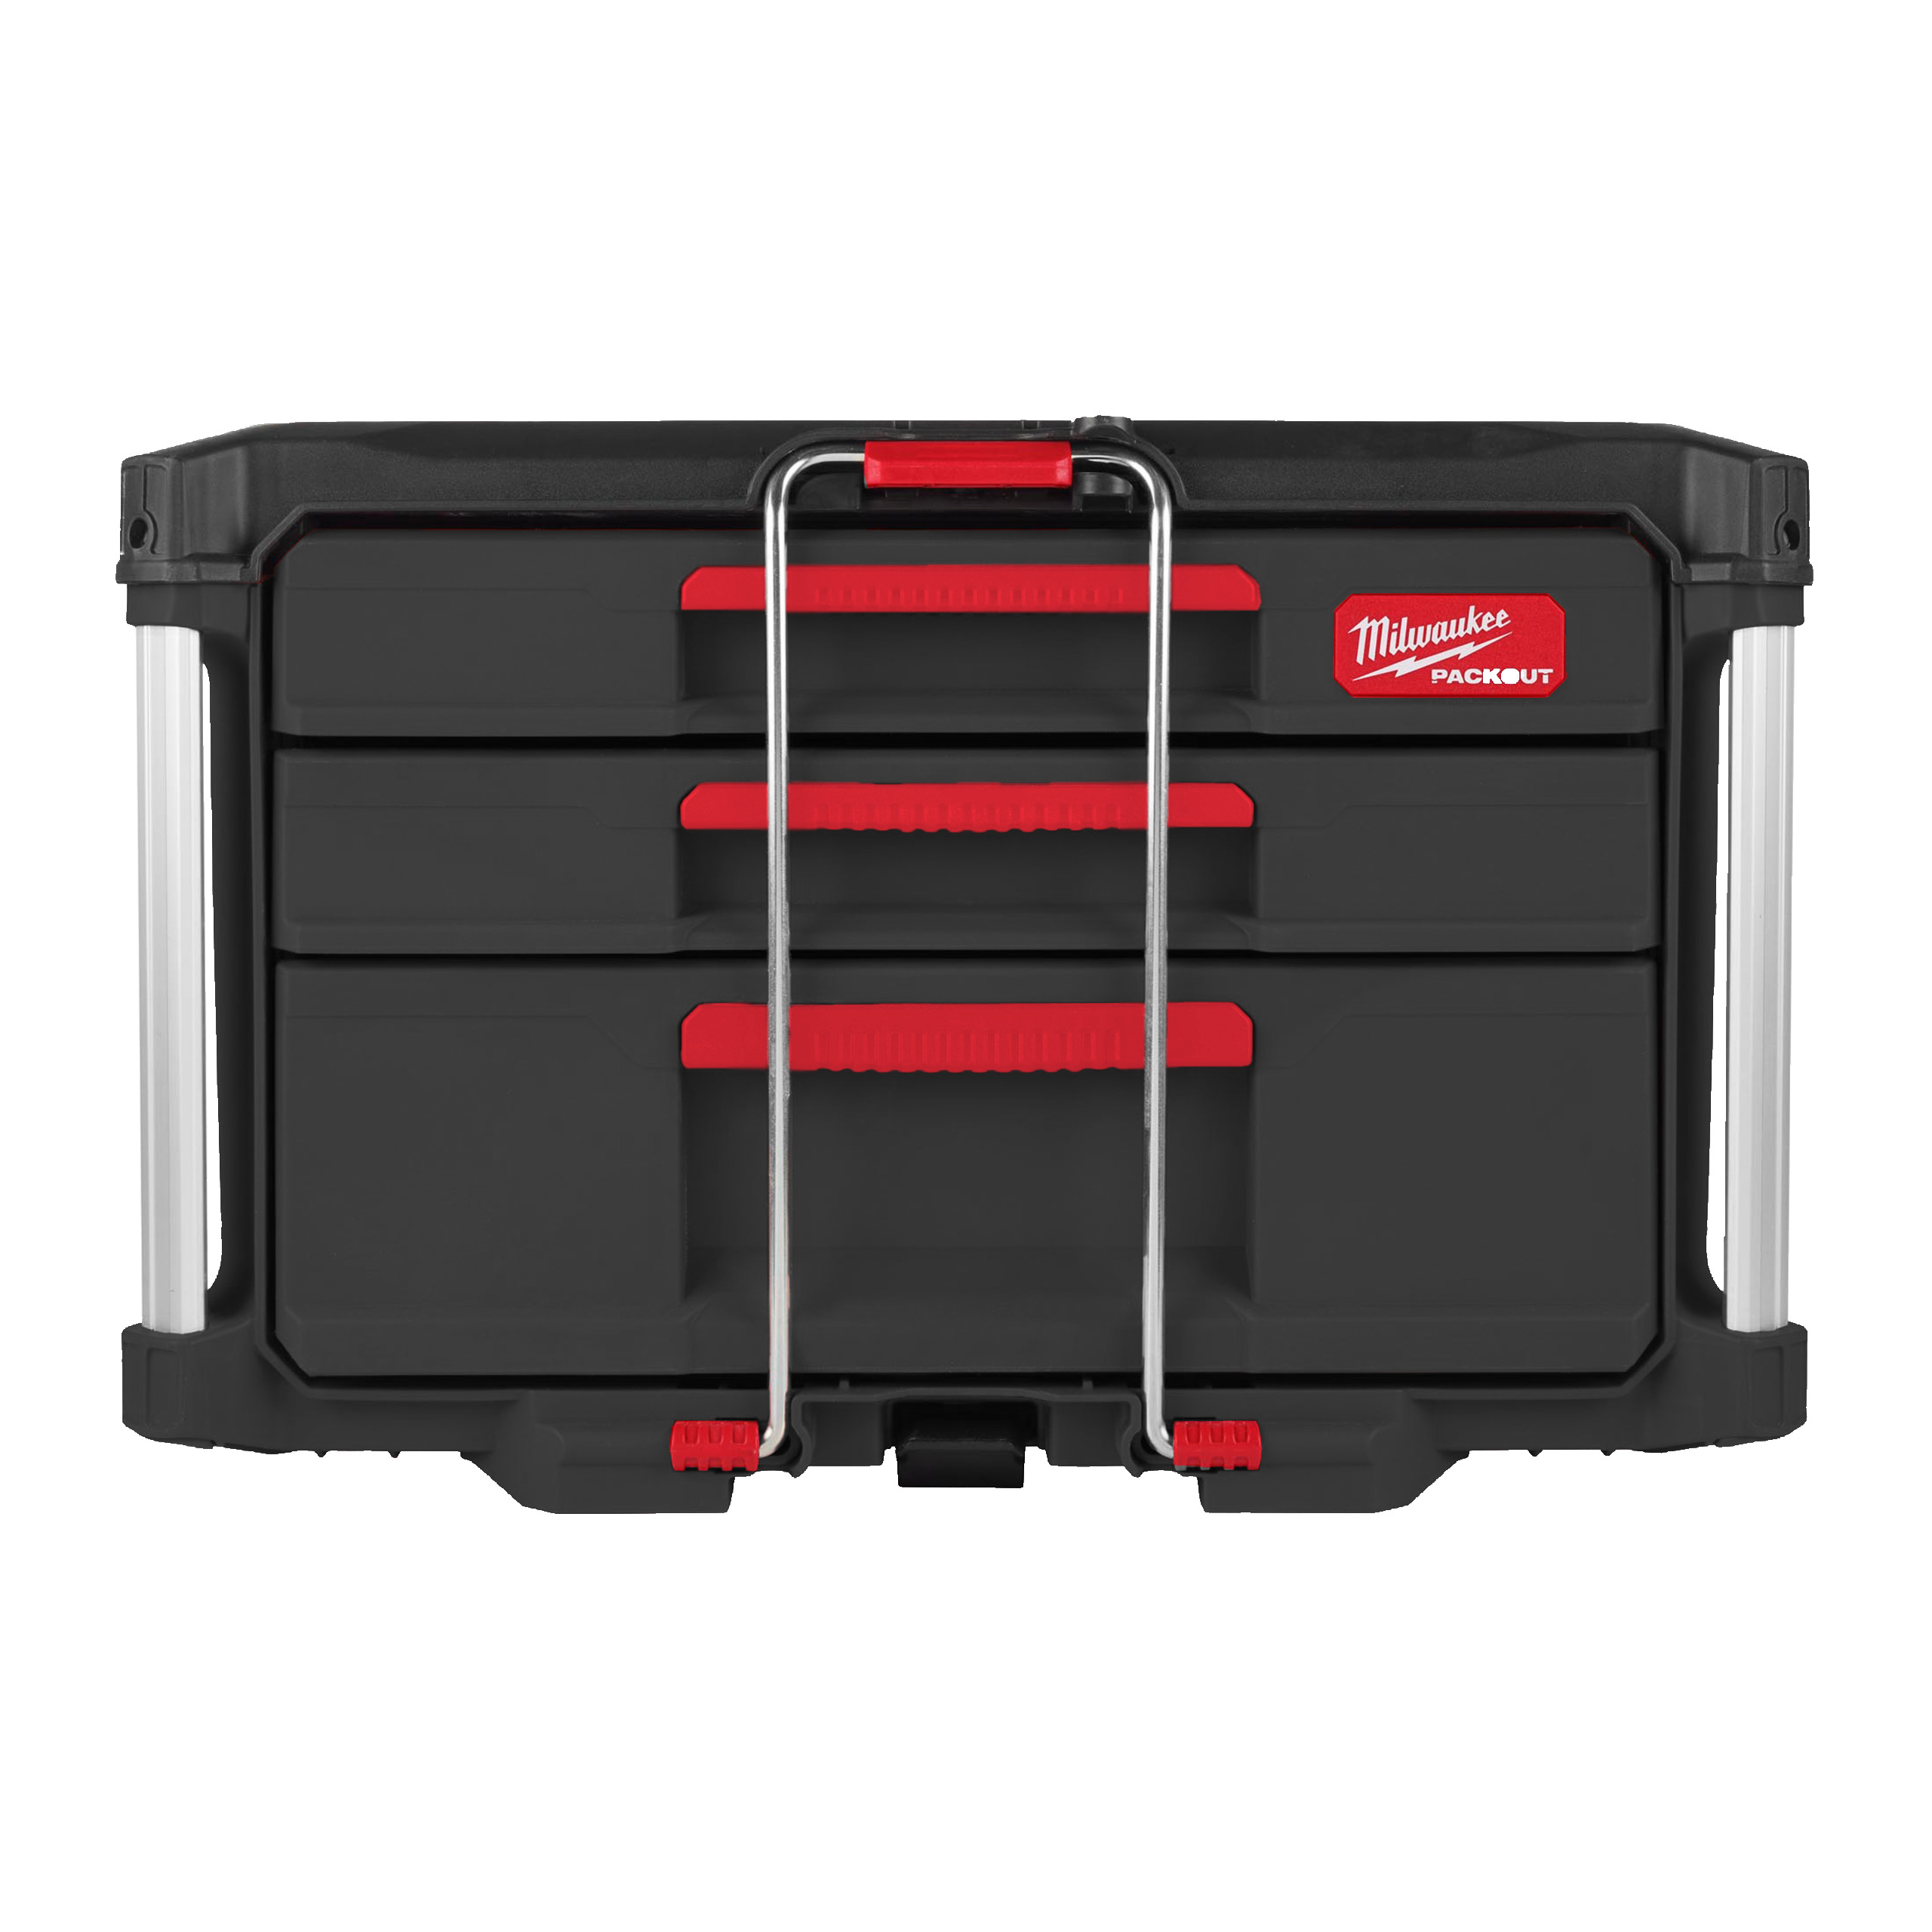 PACKOUT Koffer mit 2+1 Schubladen | 560 x 410 x 360 mm